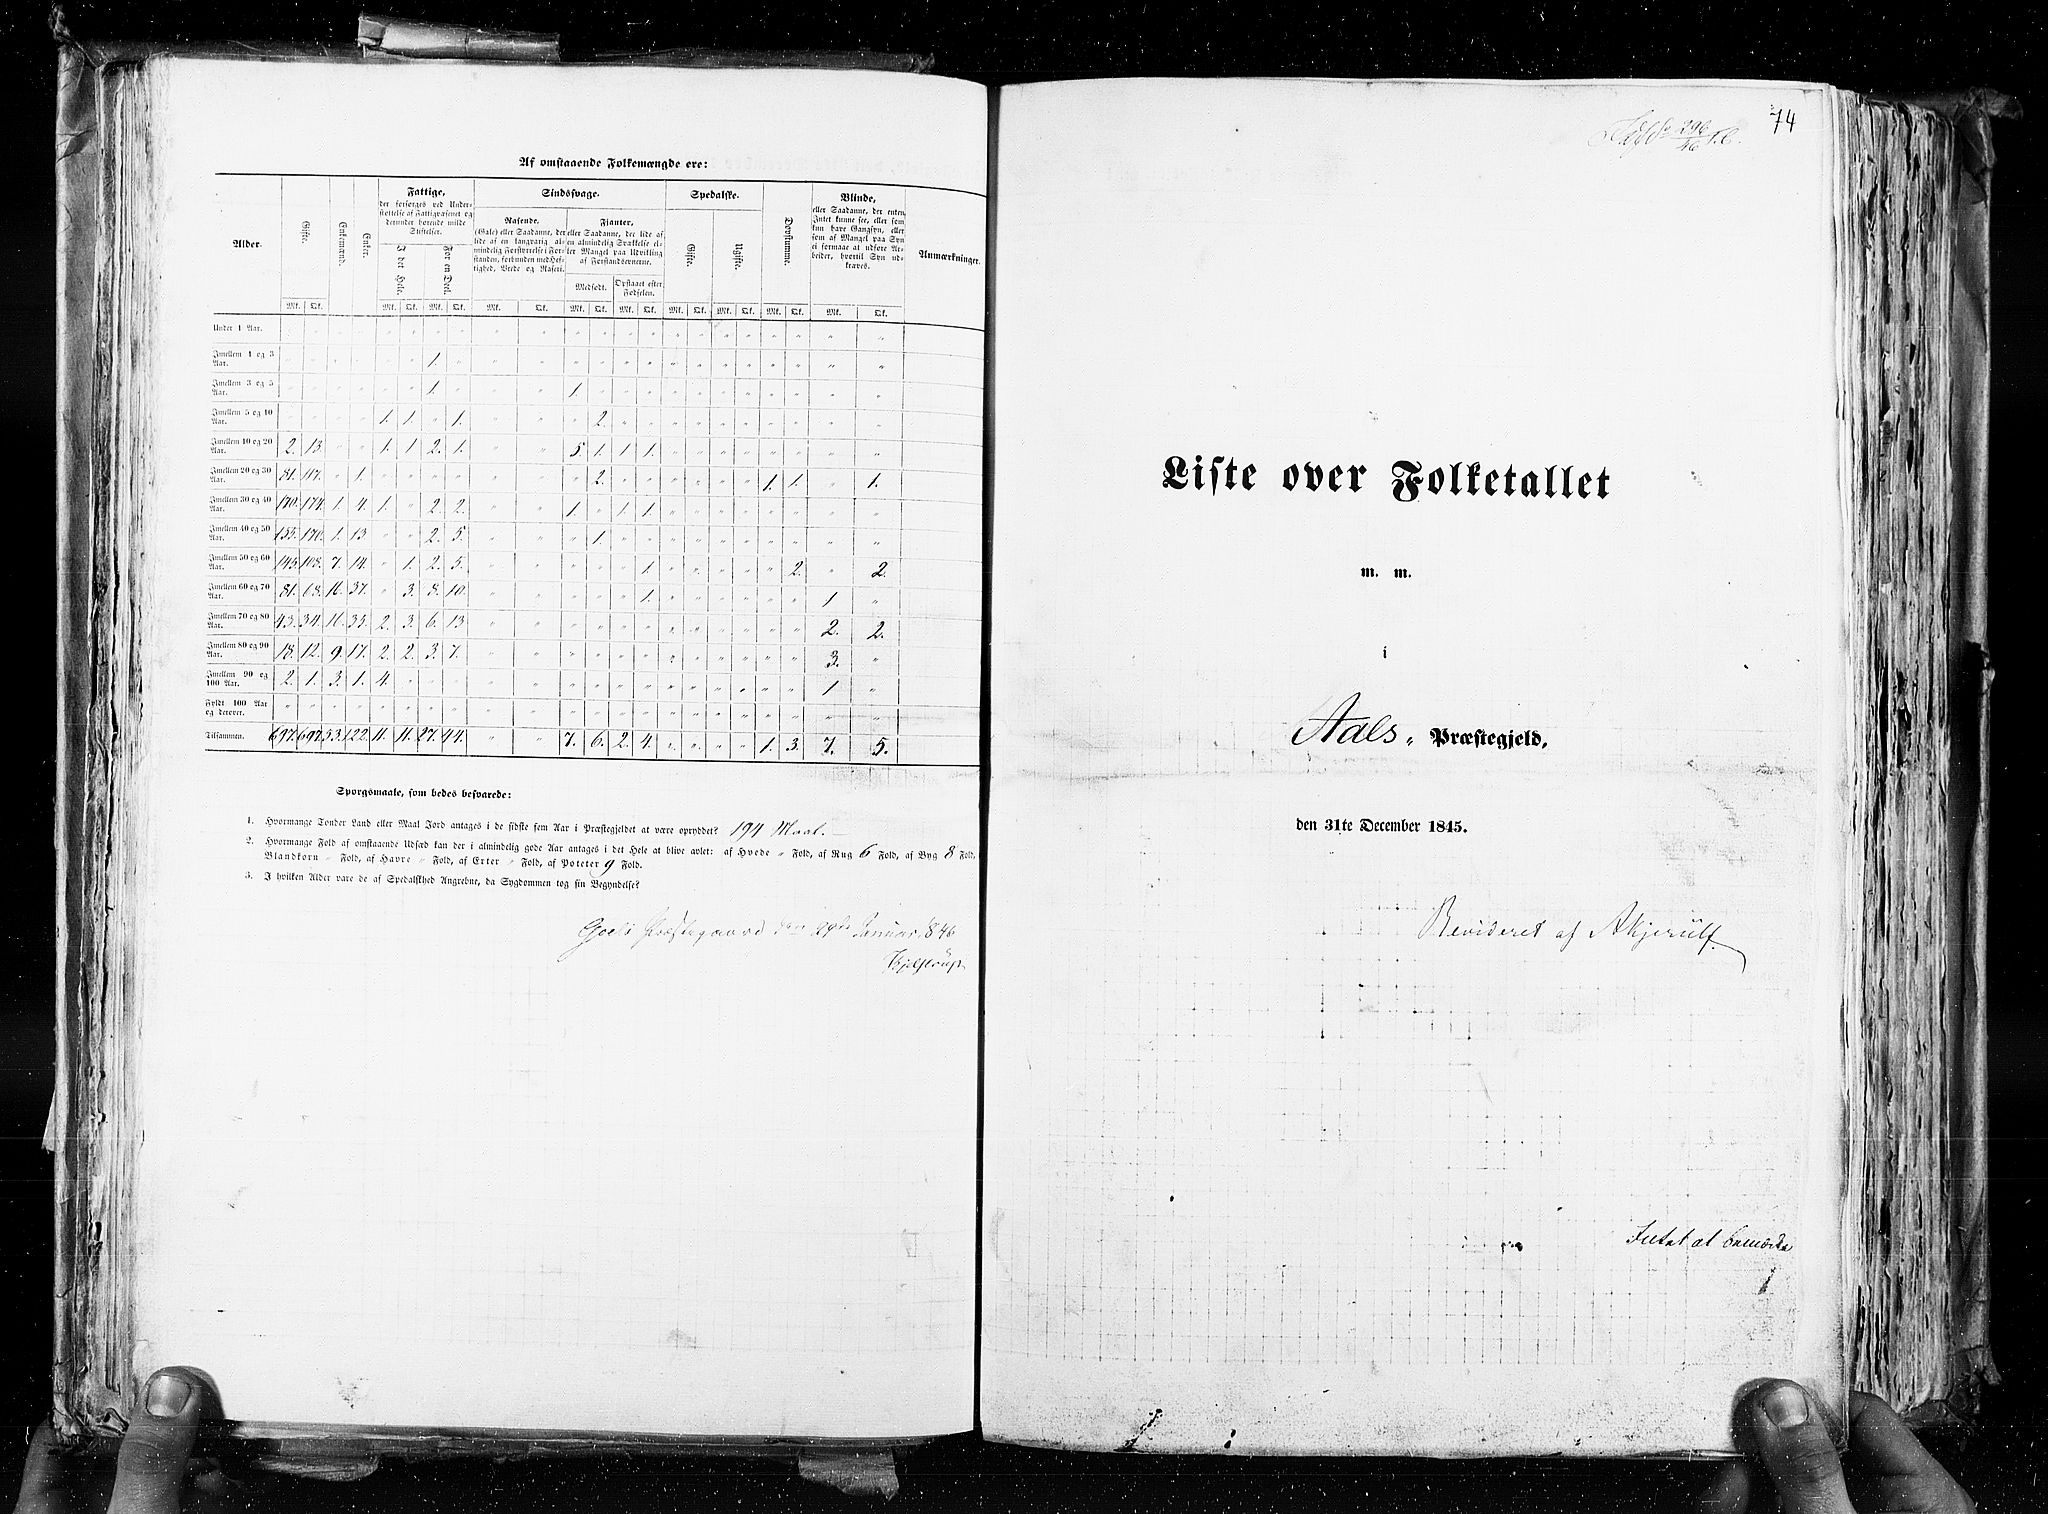 RA, Folketellingen 1845, bind 4: Buskerud amt og Jarlsberg og Larvik amt, 1845, s. 74